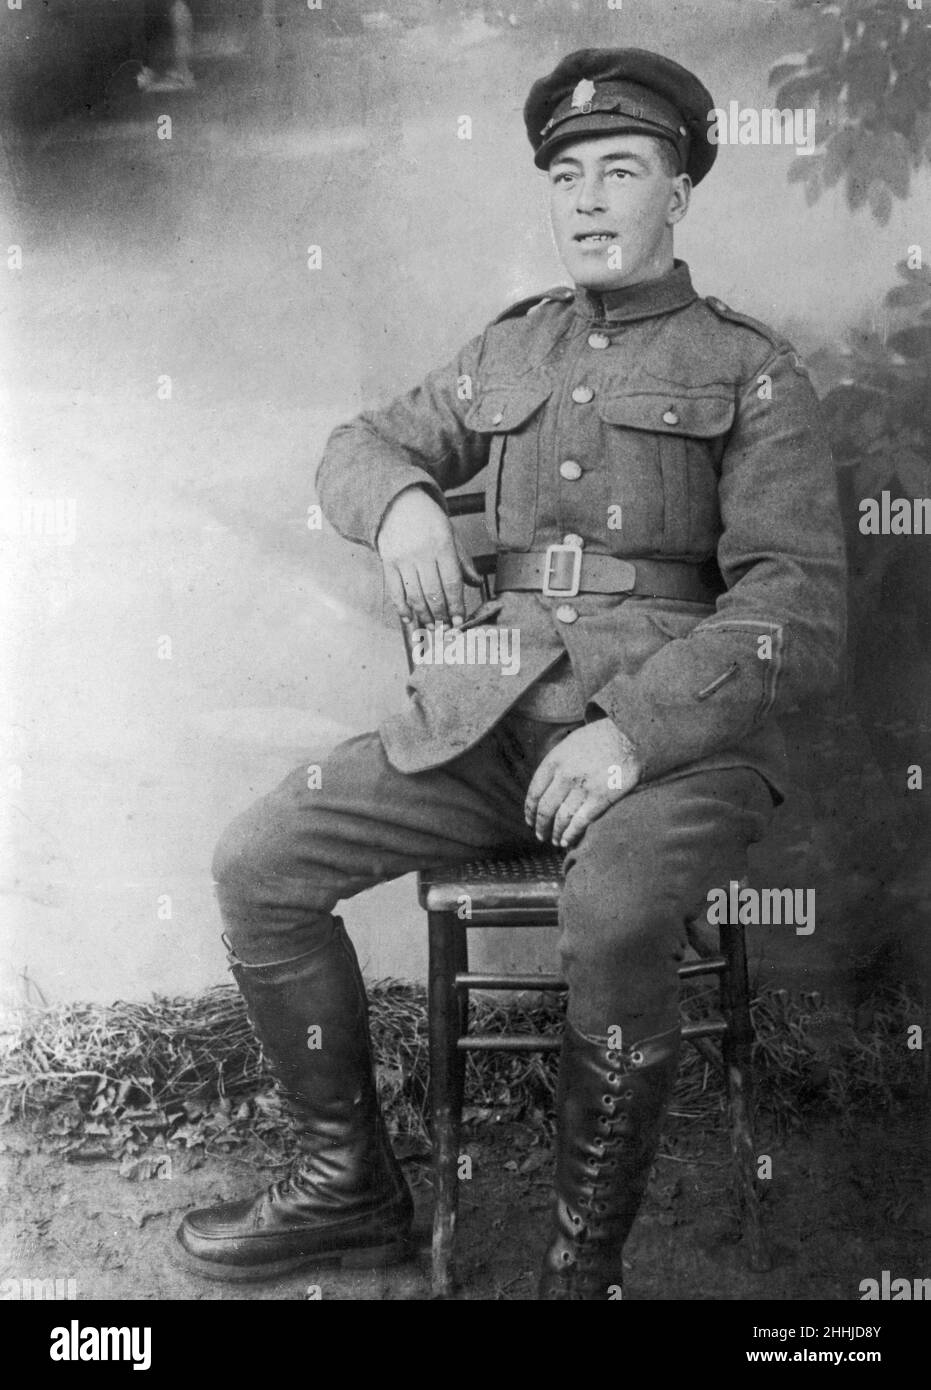 Thomas Allaway, accusato e condannato per l'assassinio di Irene Wilkins, si vede posare nella sua uniforme verso la fine della prima guerra mondiale. Circa 1918 Foto Stock